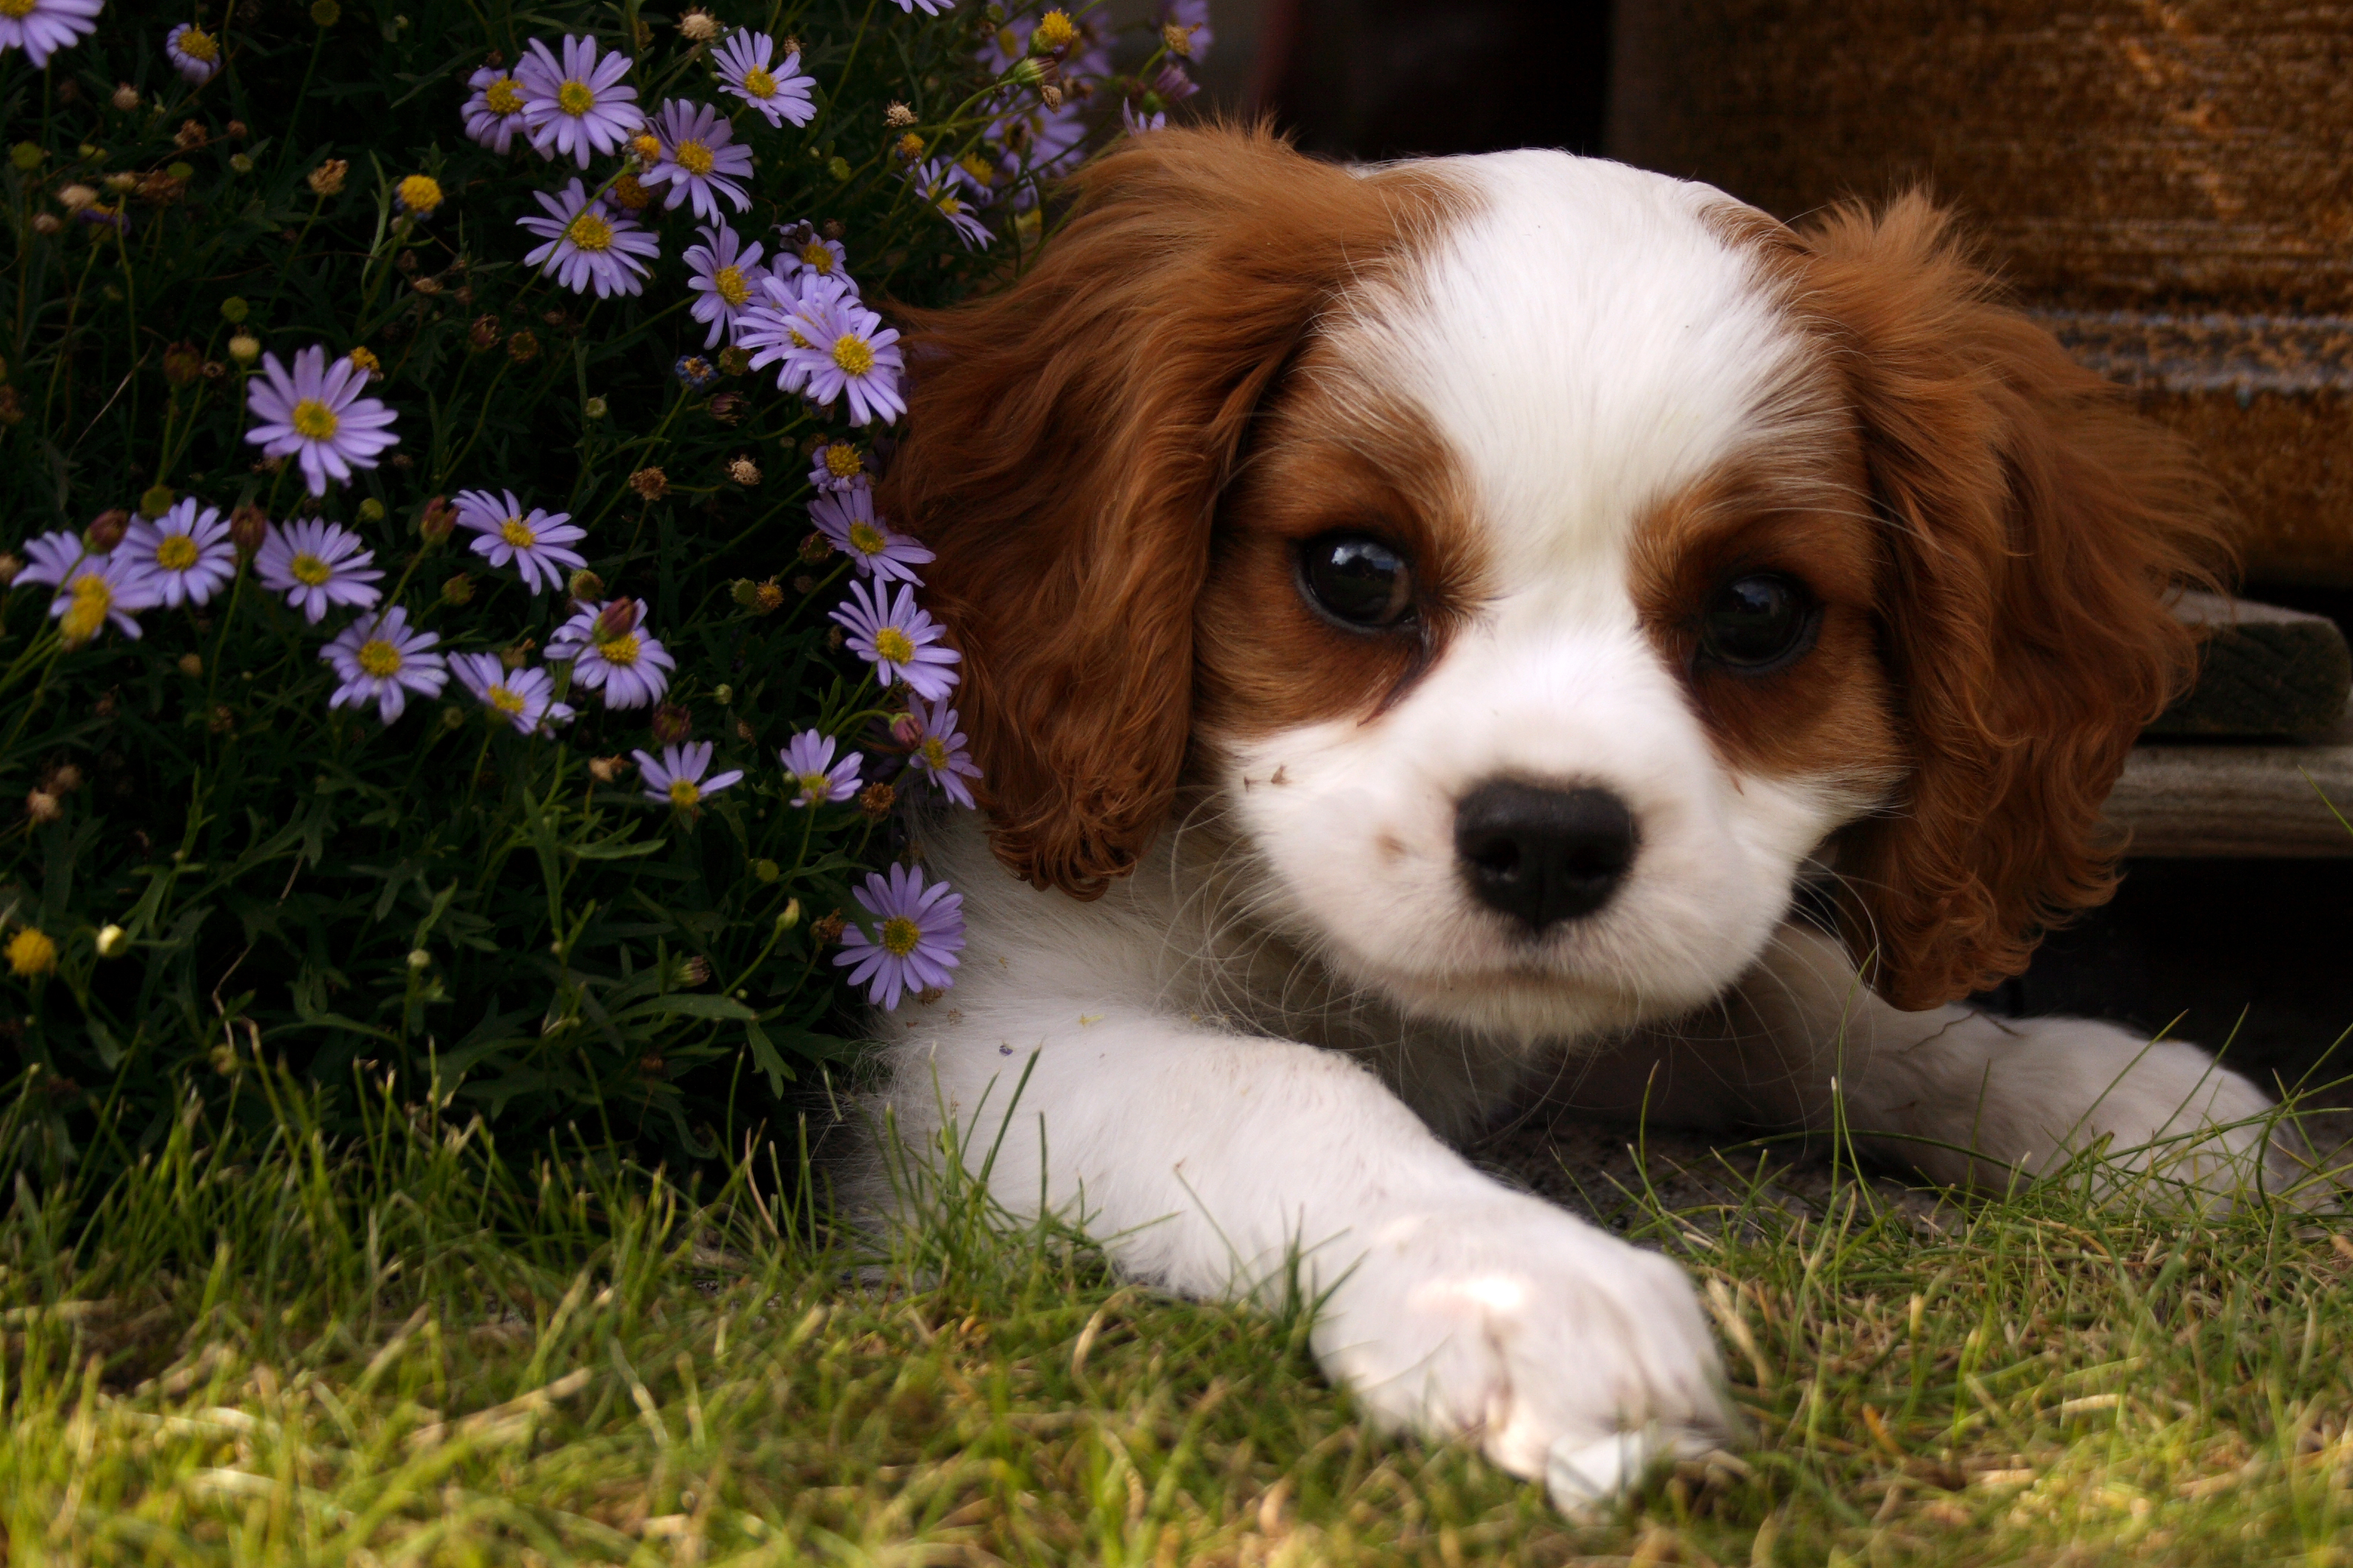 File:Cute dog.jpg - Wikimedia Commons